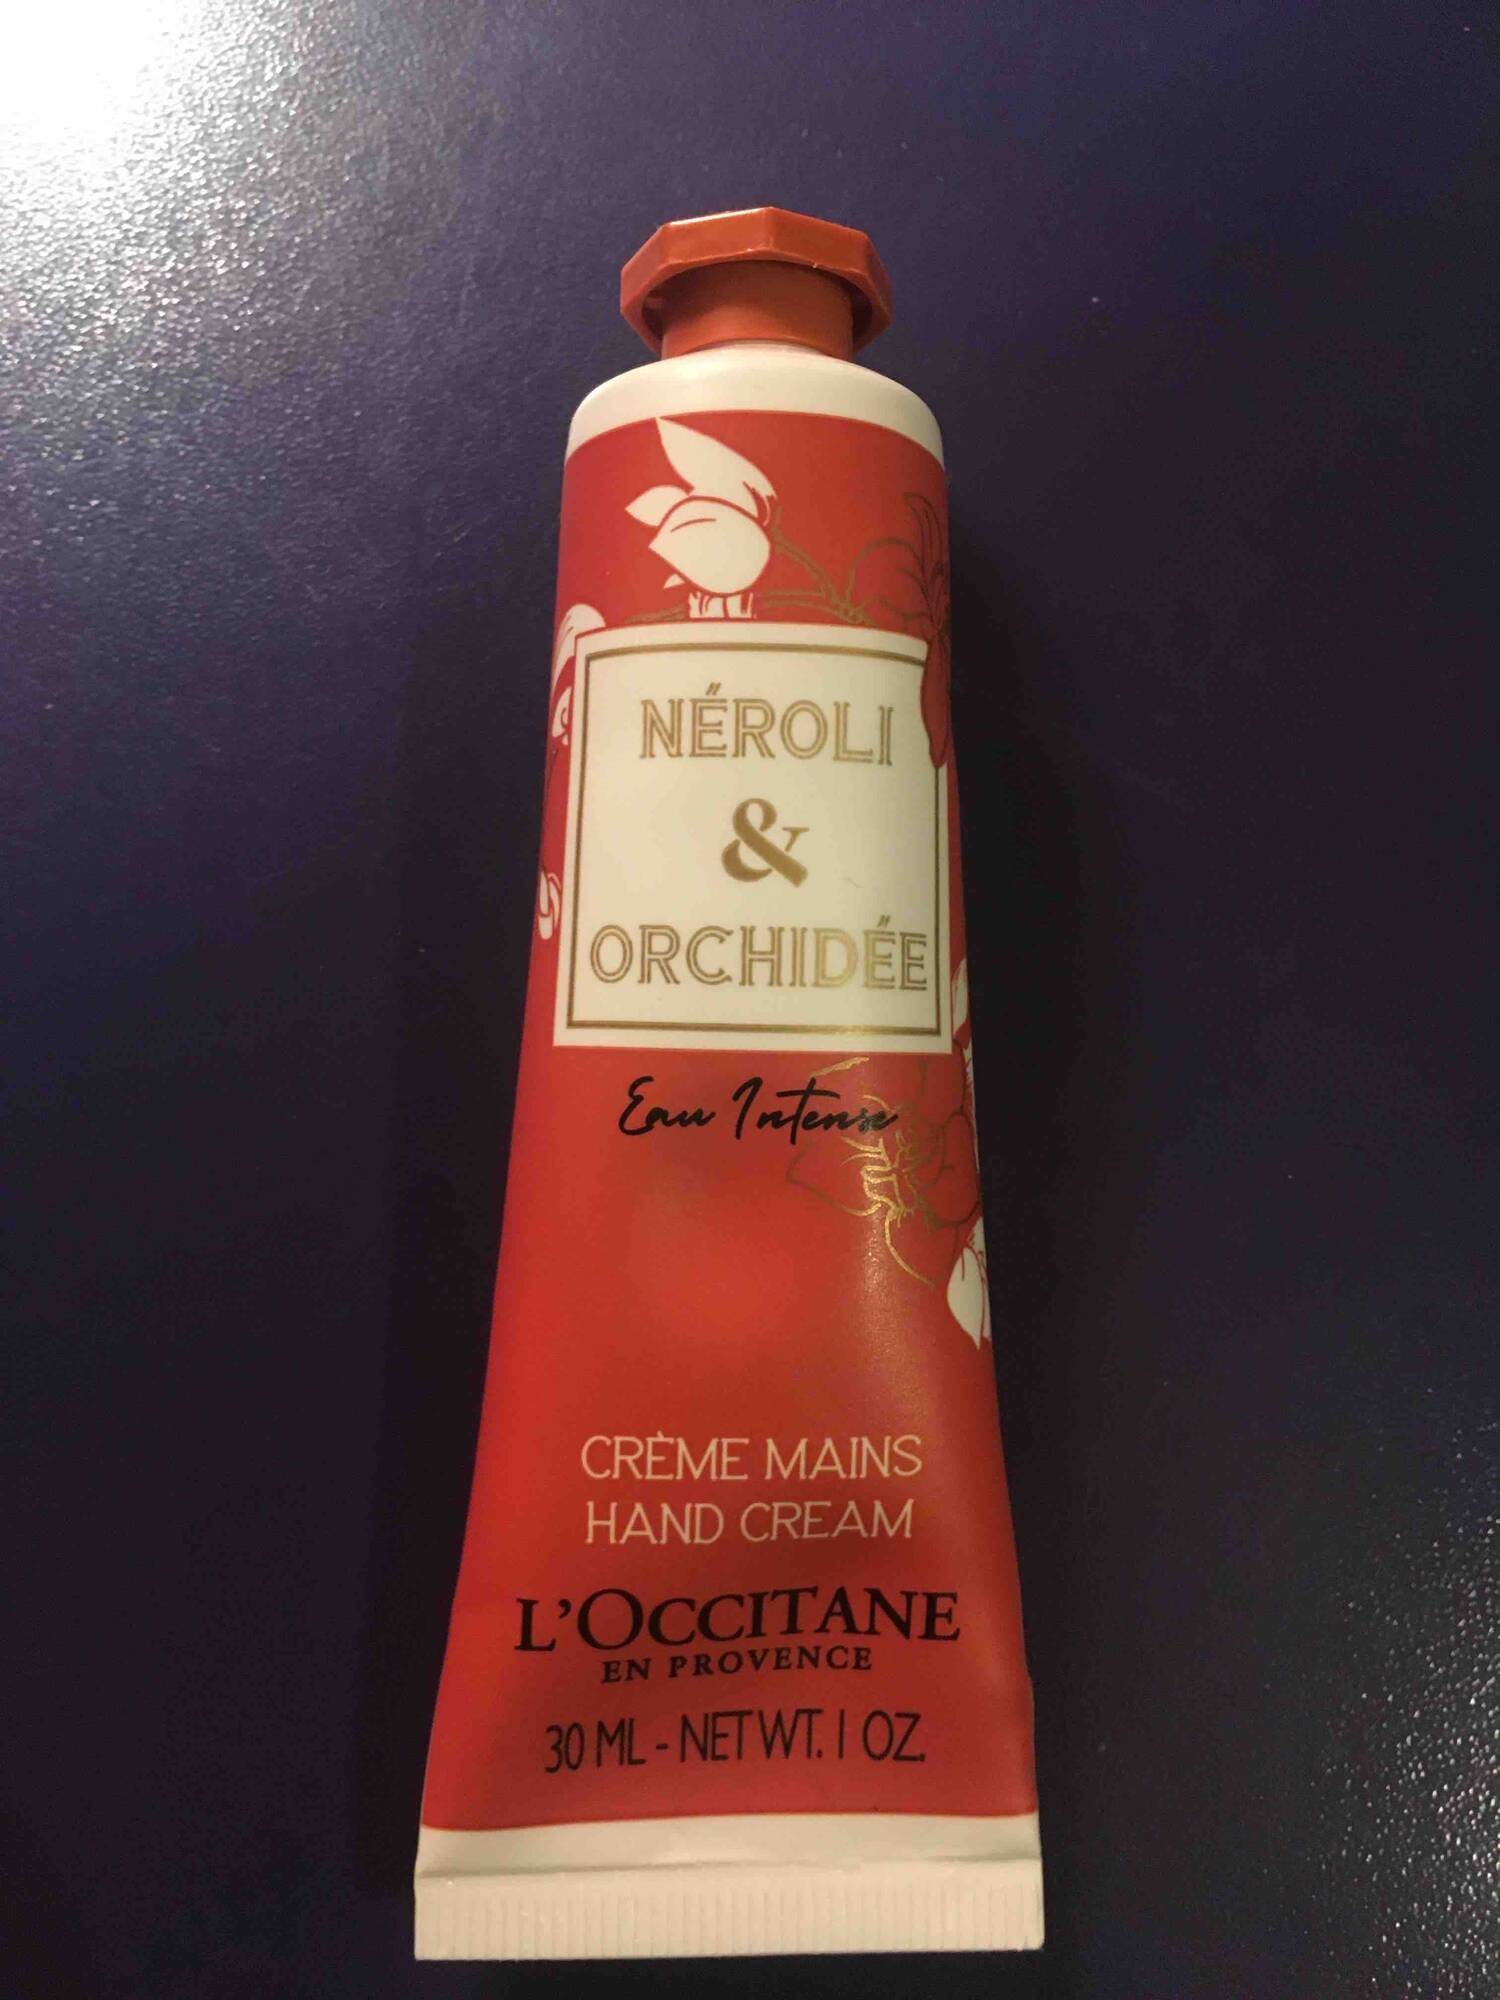 L'OCCITANE - Néroli & Orchidée - Crème mains